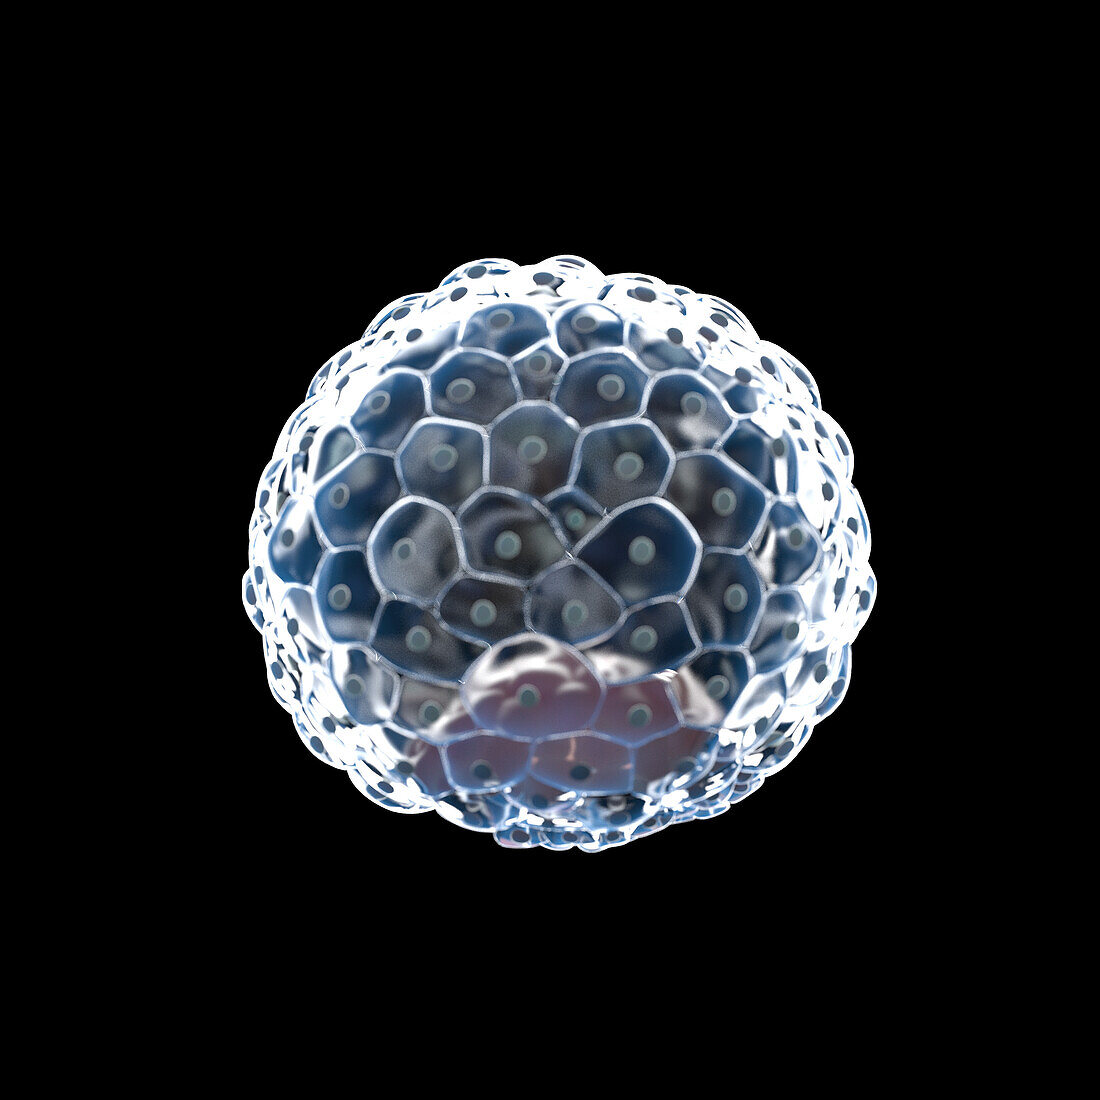 Human blastocyst, illustration